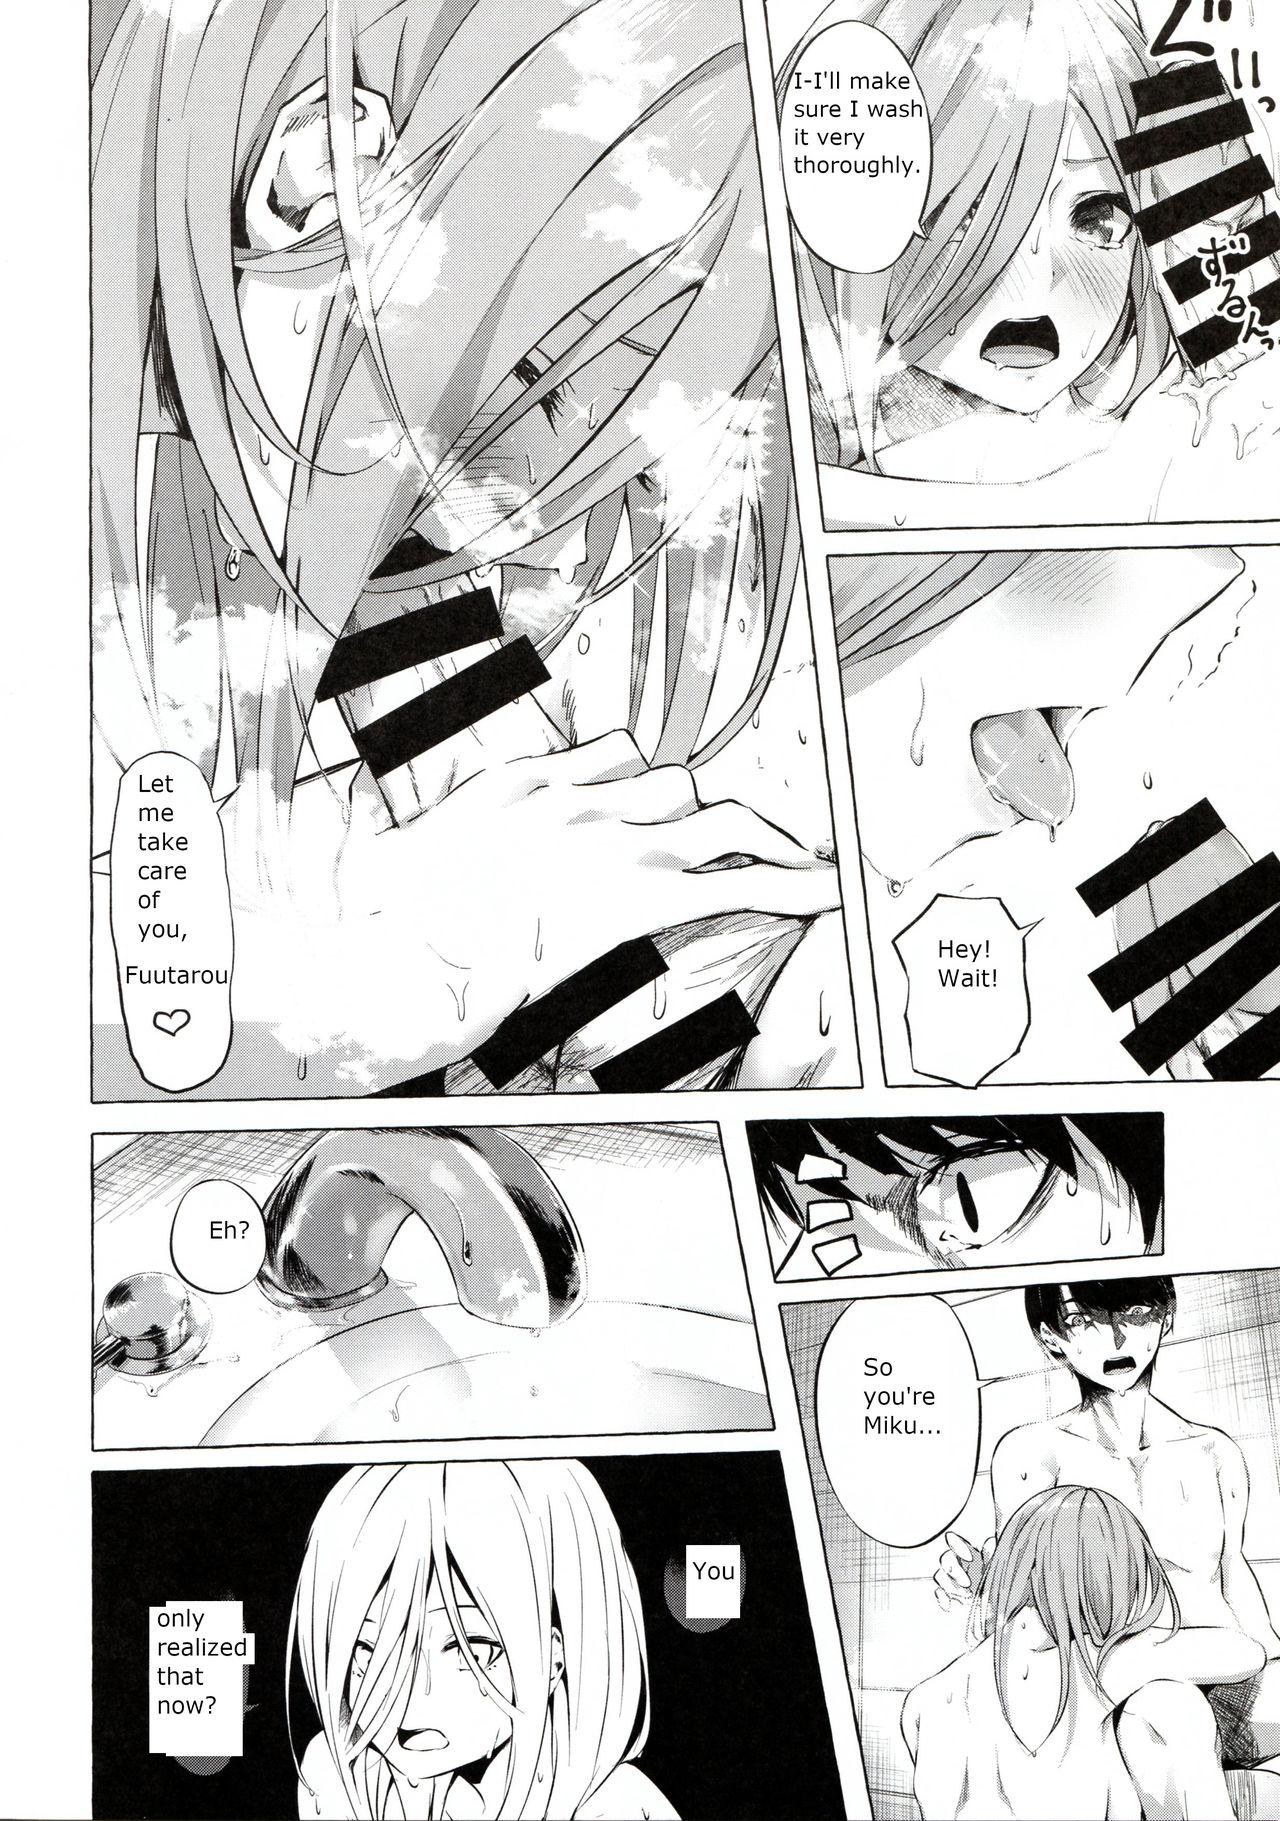 Punish Gotoubun no Sorayume - Gotoubun no hanayome Negao - Page 6